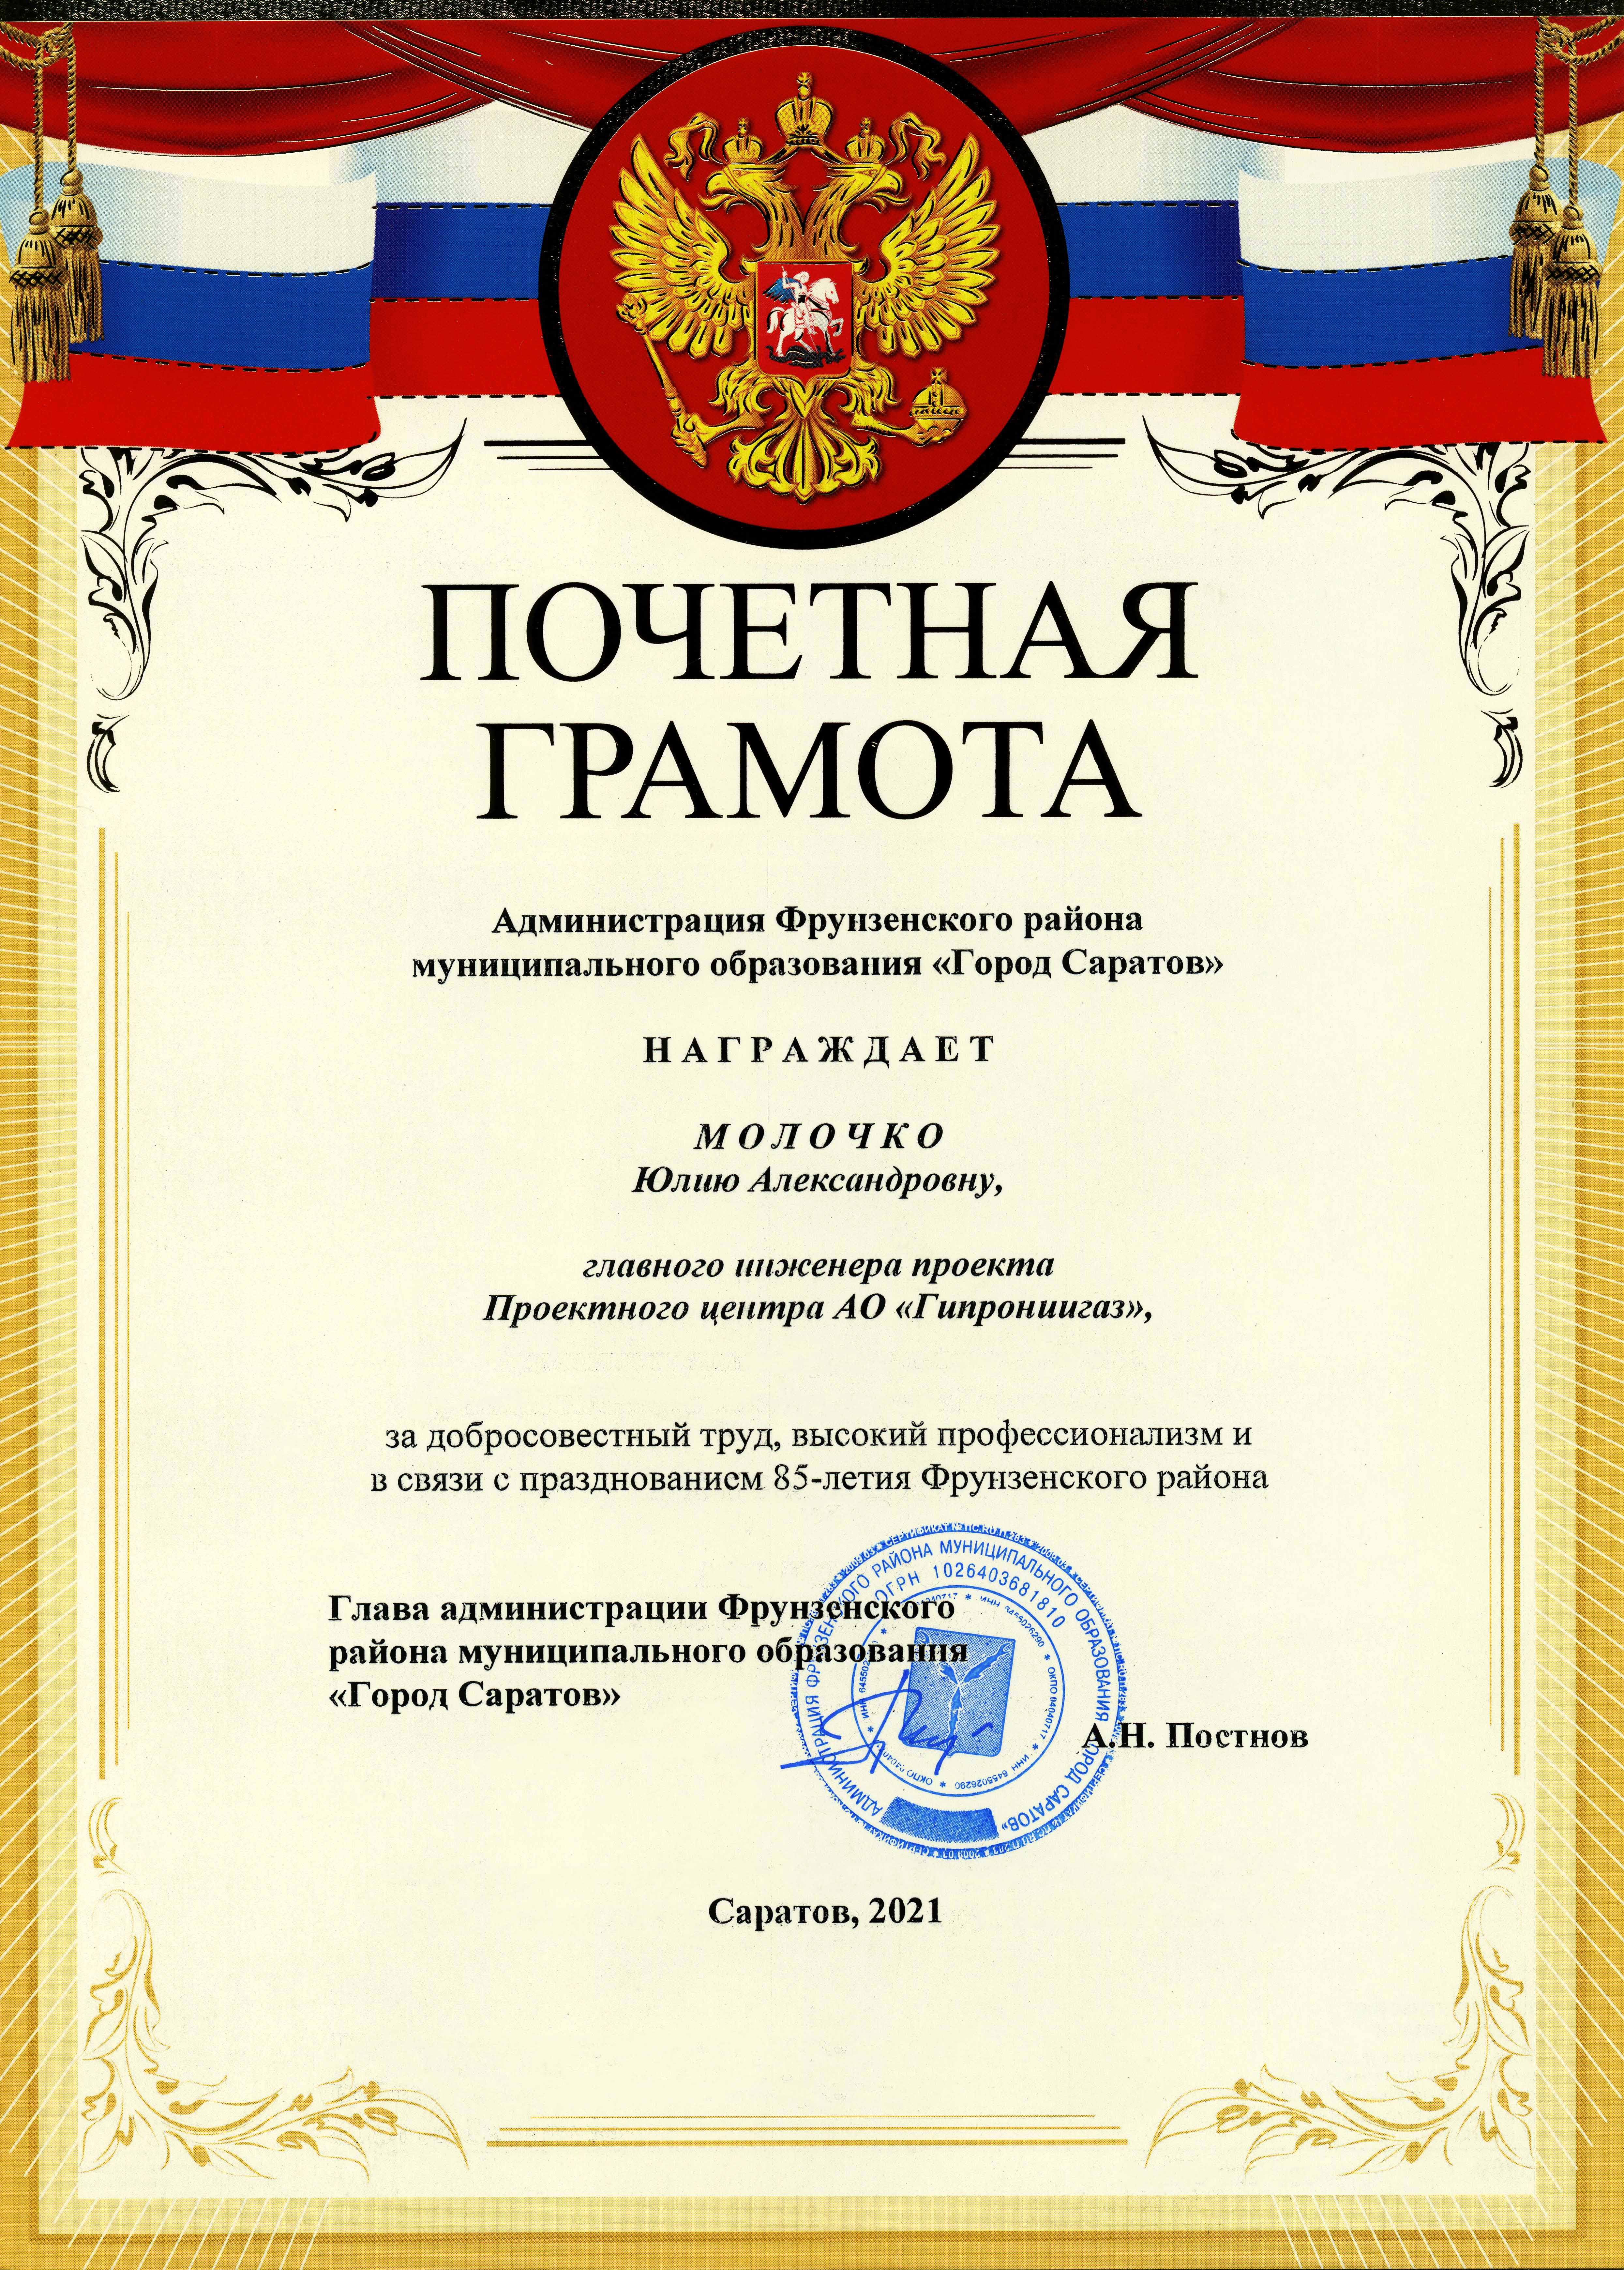 Главный инженер проекта АО "Гипрониигаз" награжден почетной грамотой Фрунзенского района МО "Город Саратов"